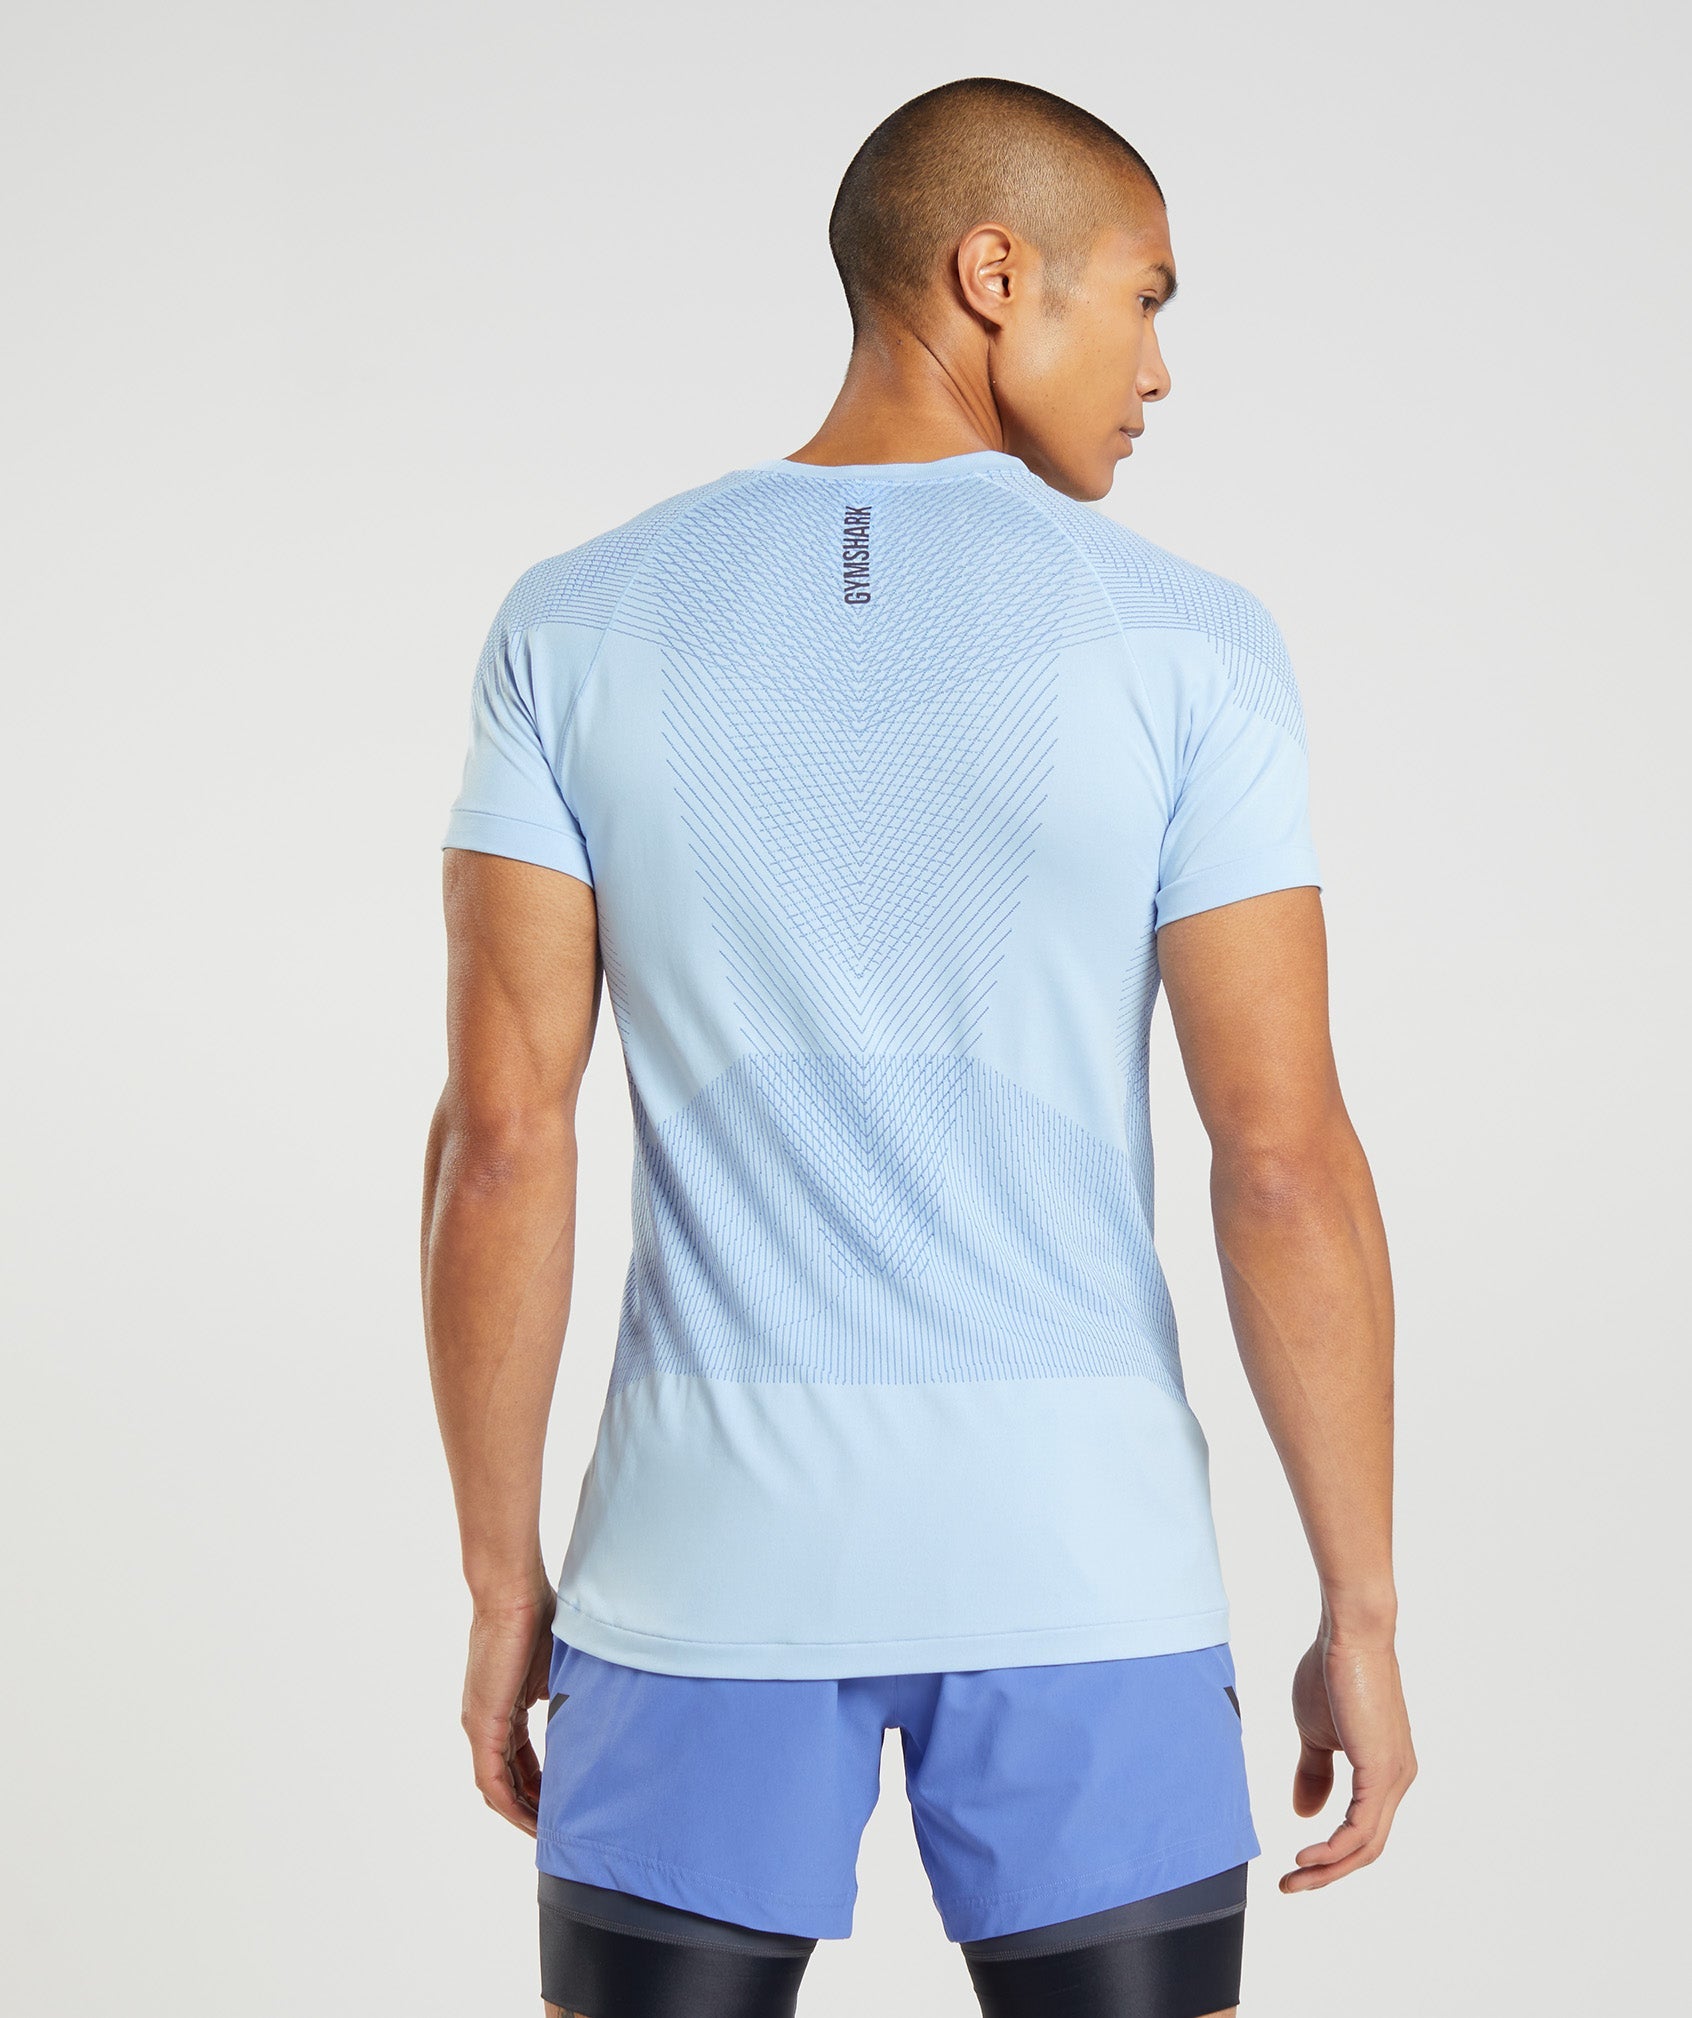 Apex Seamless T-Shirt in Linen Blue/Court Blue - view 2